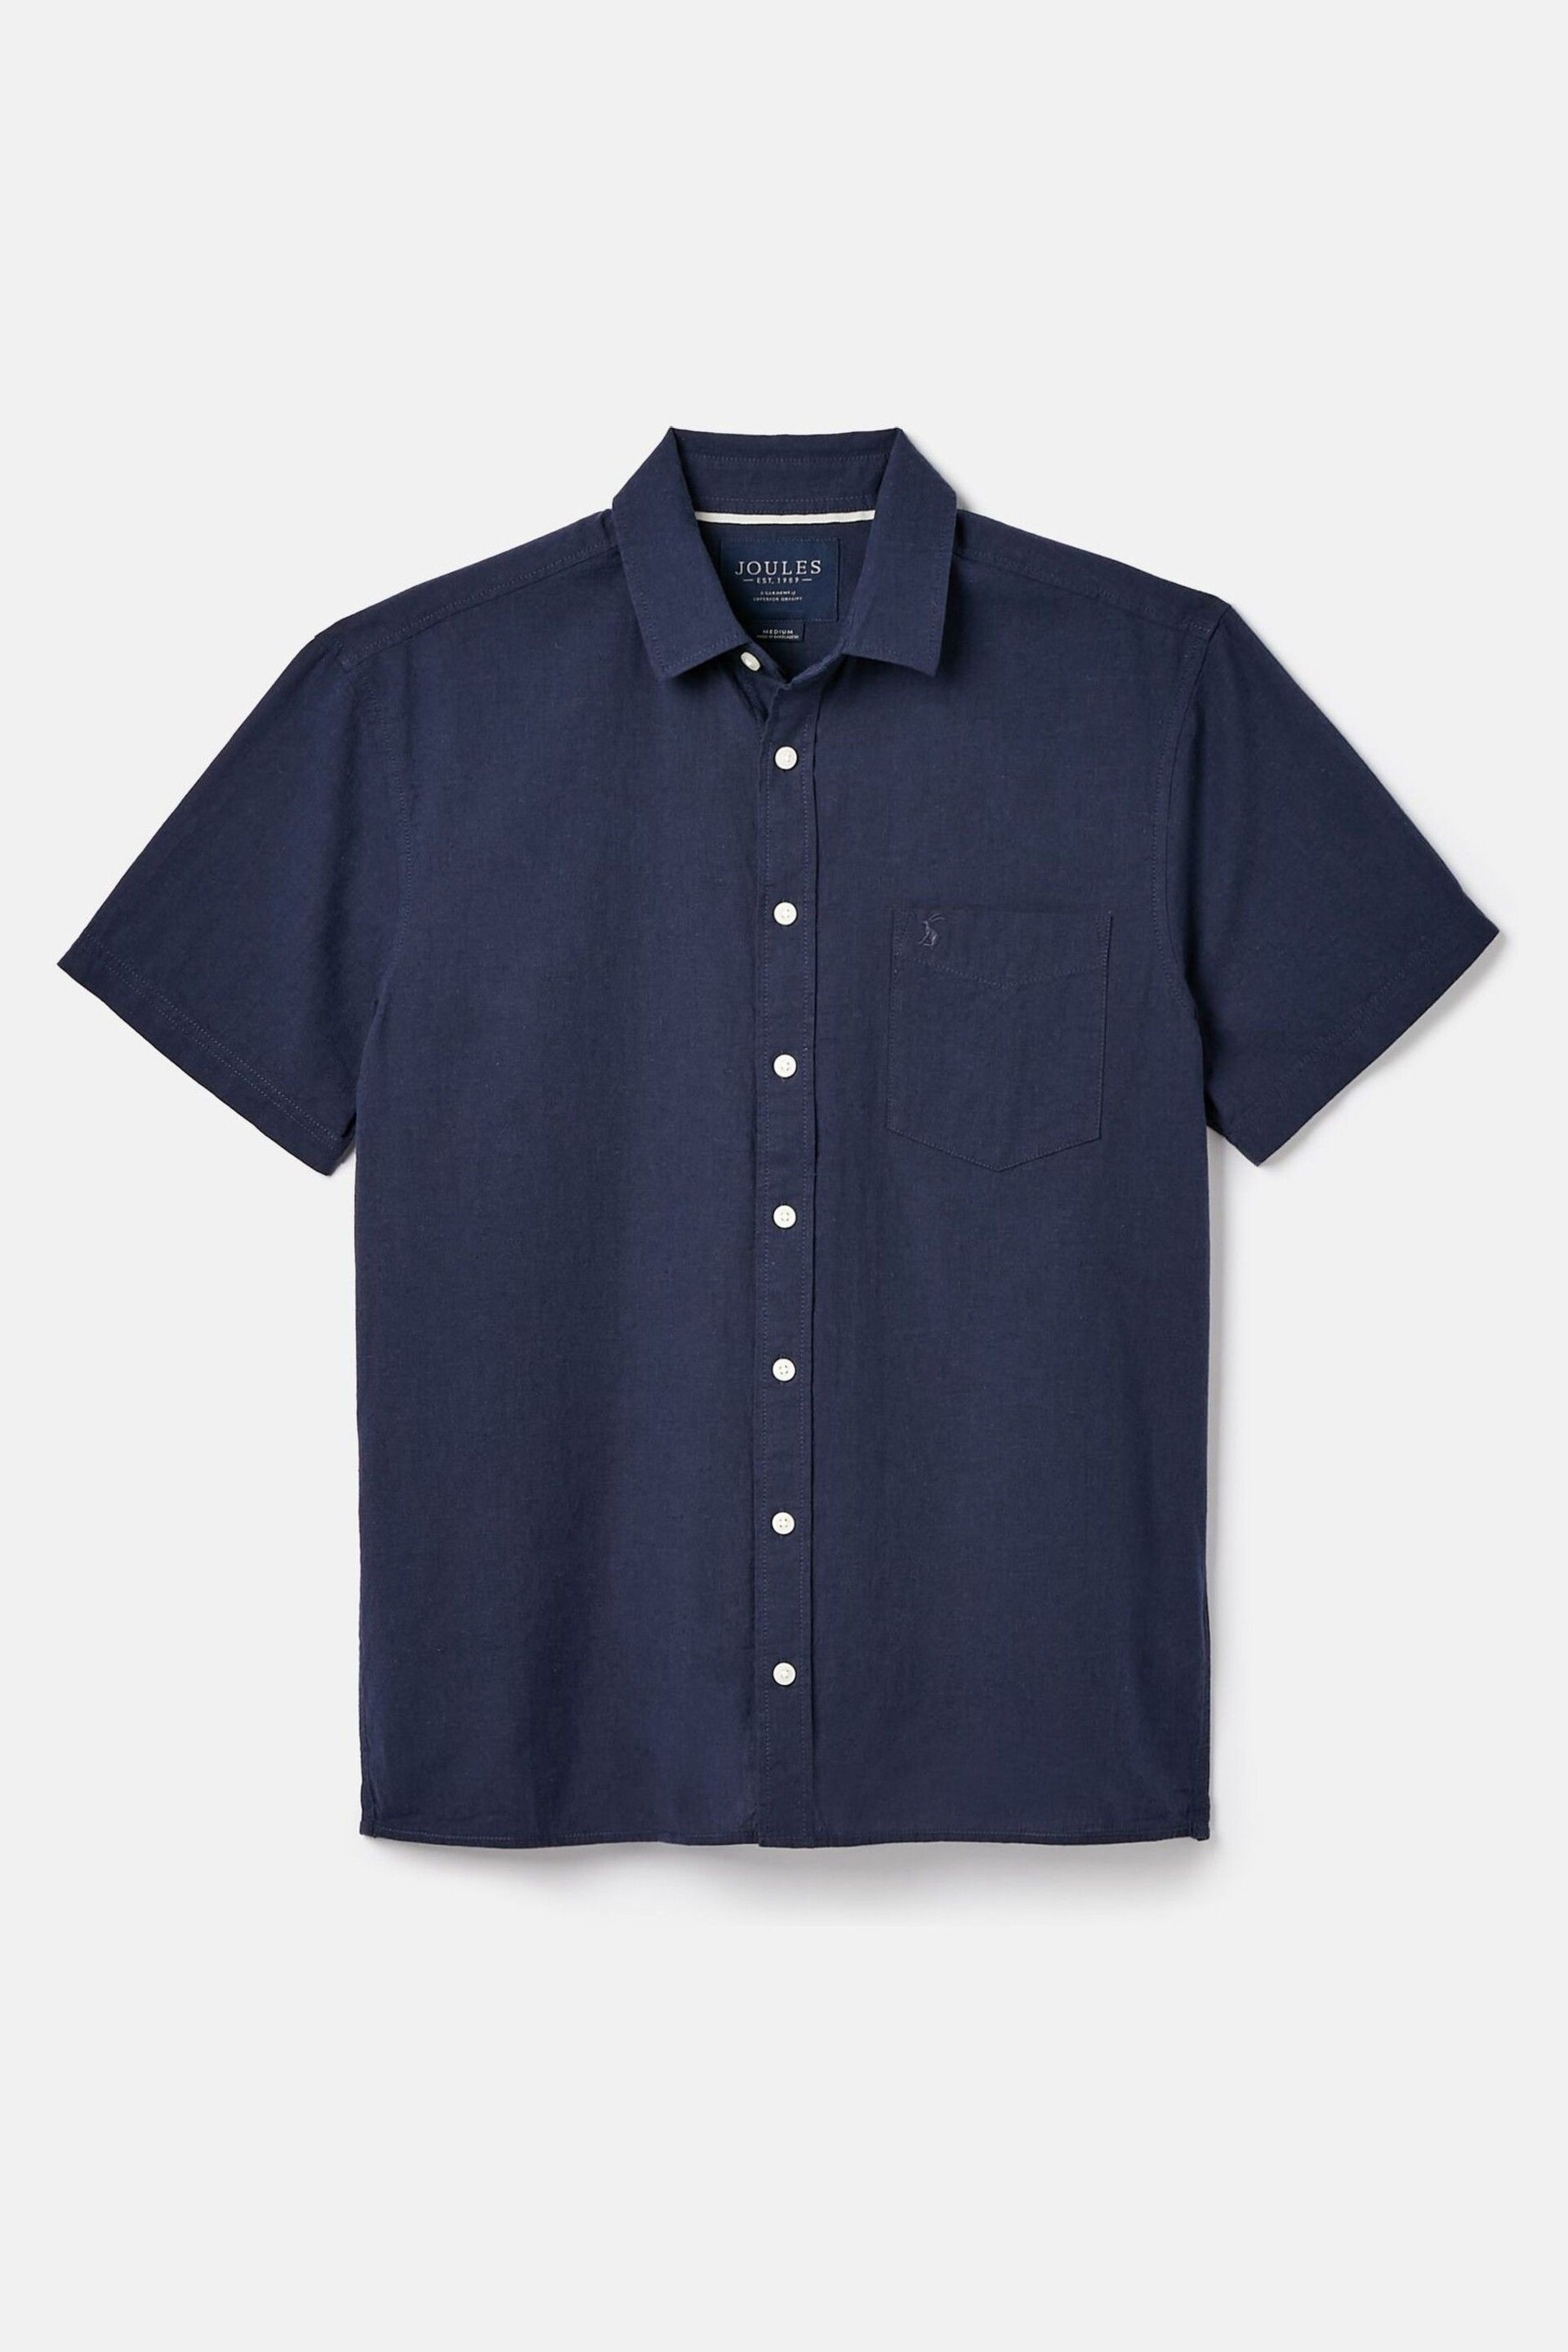 Joules Linen Blend Navy Blue Plain Short Sleeve Shirt - Image 6 of 6